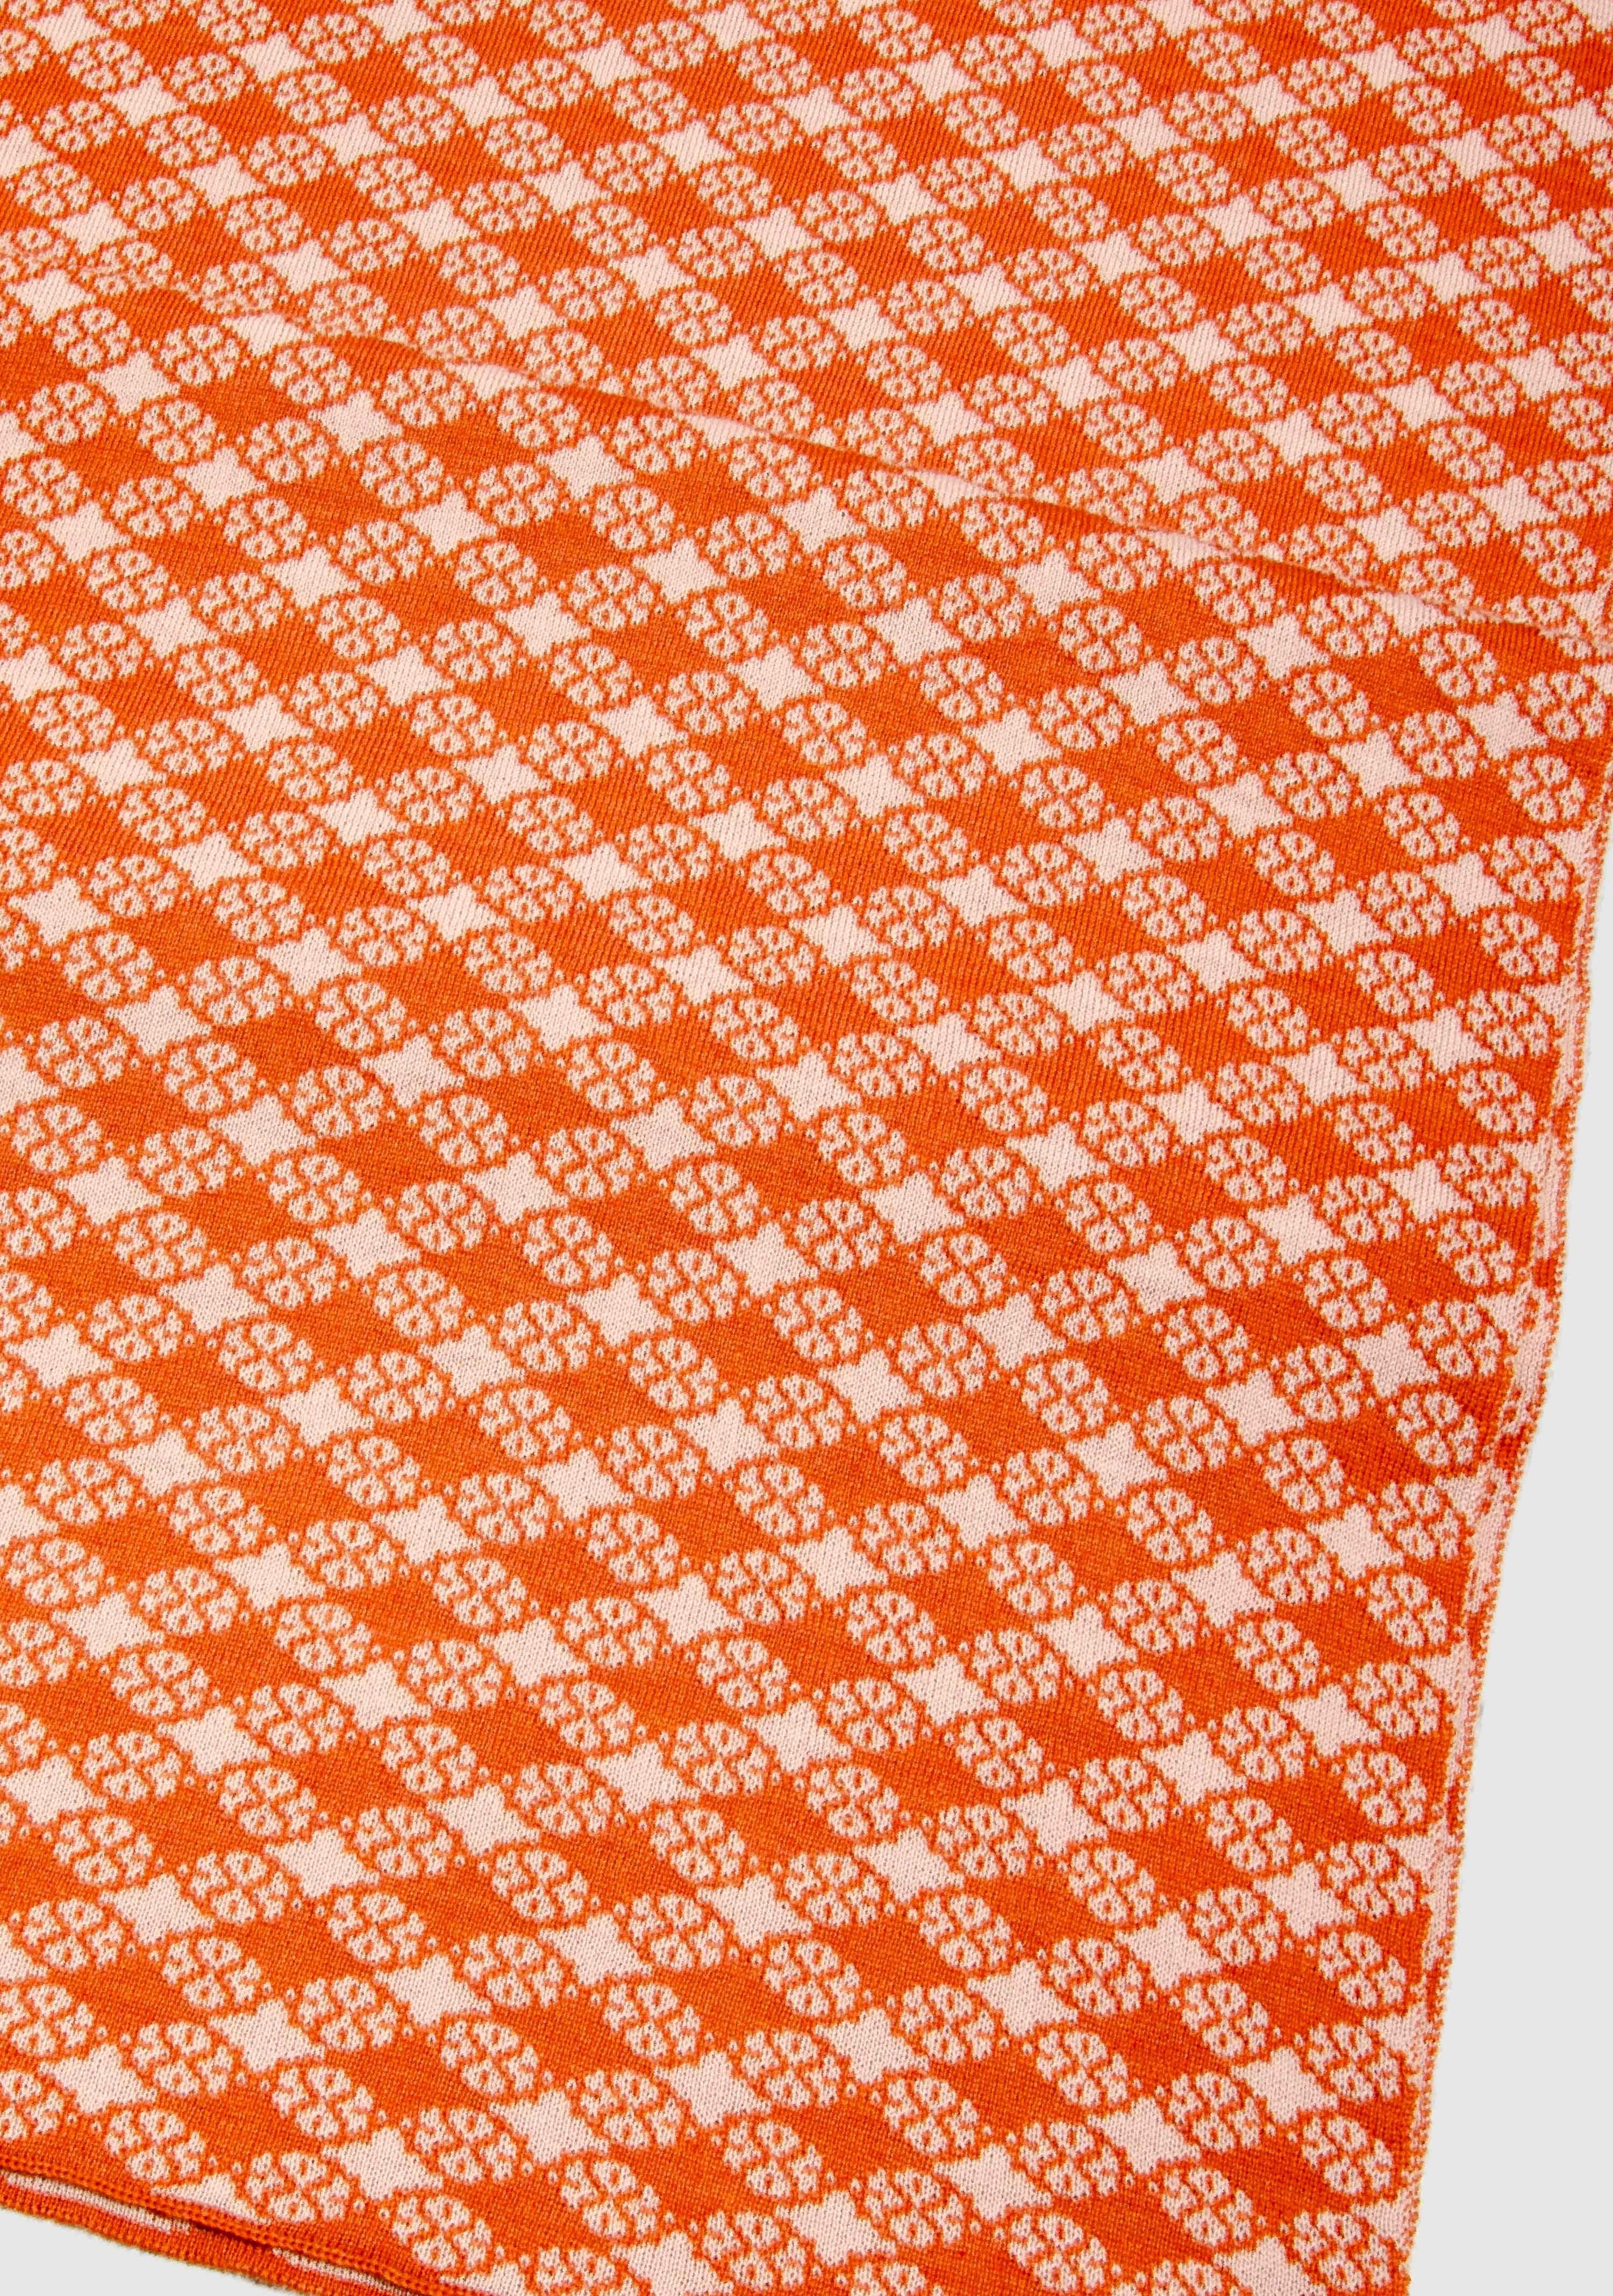 LANARTO slow extrasoft Wollschal fashion in Blütenkaro Schal orange_rosa Merino Farben 100% schönen